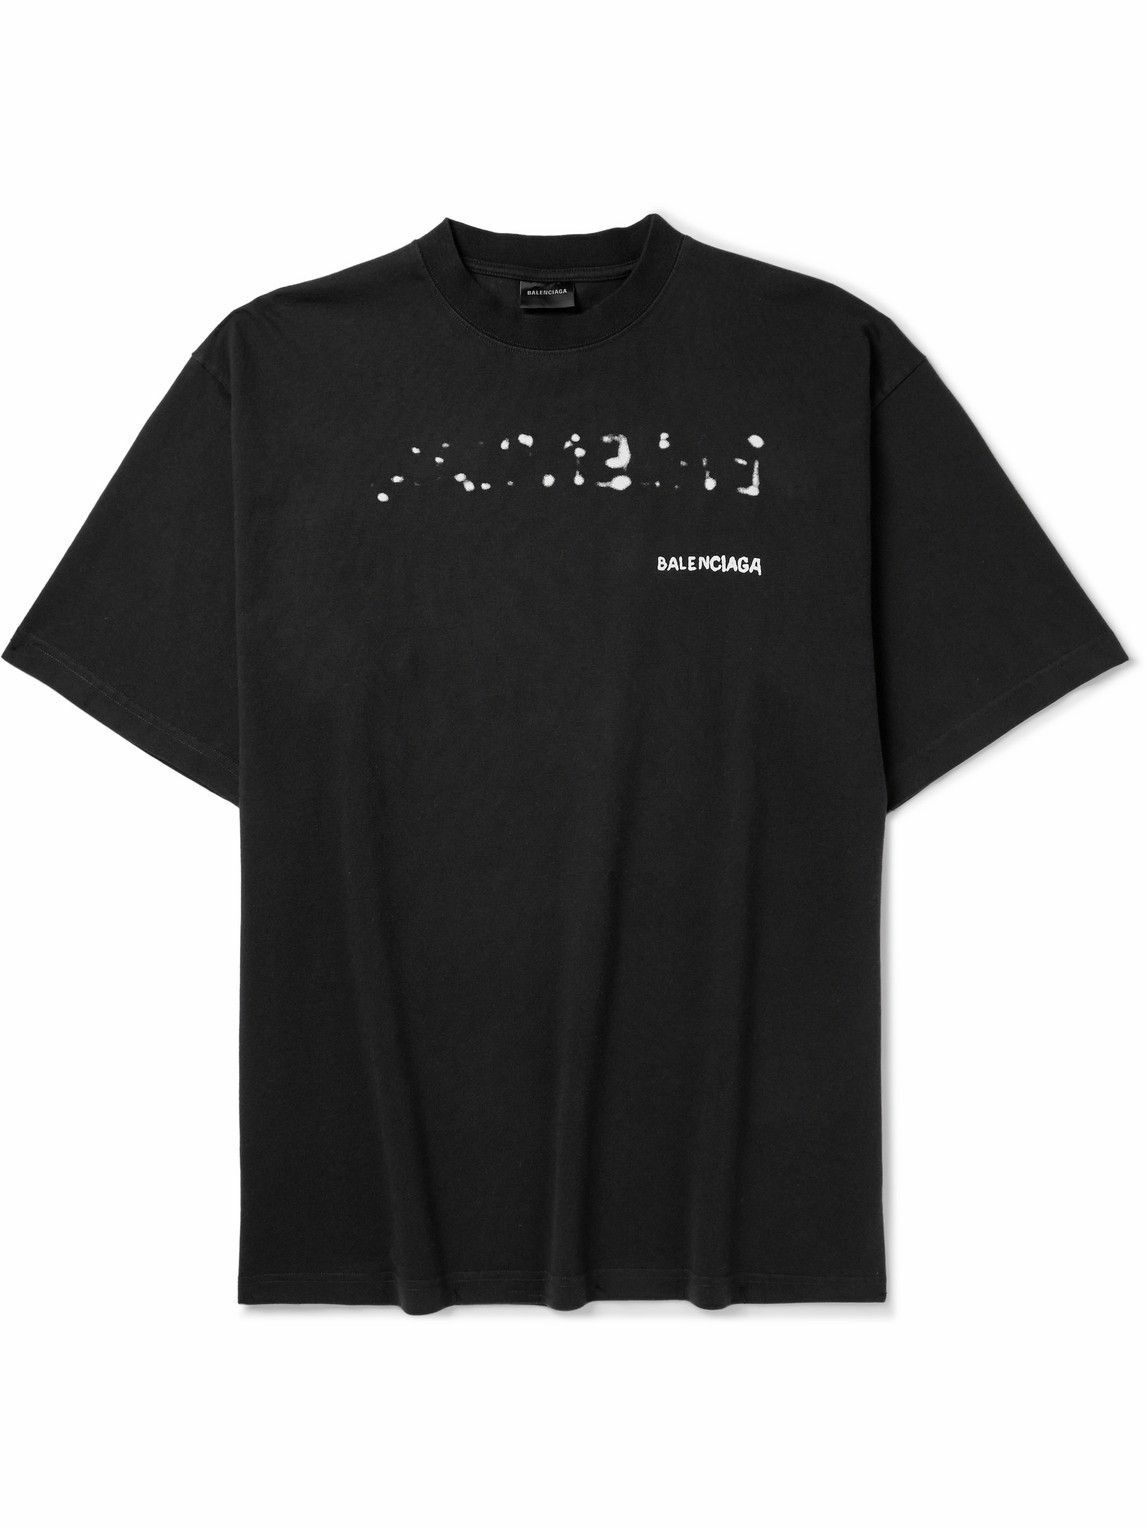 Balenciaga - Logo-Print Cotton-Jersey T-Shirt - Black Balenciaga